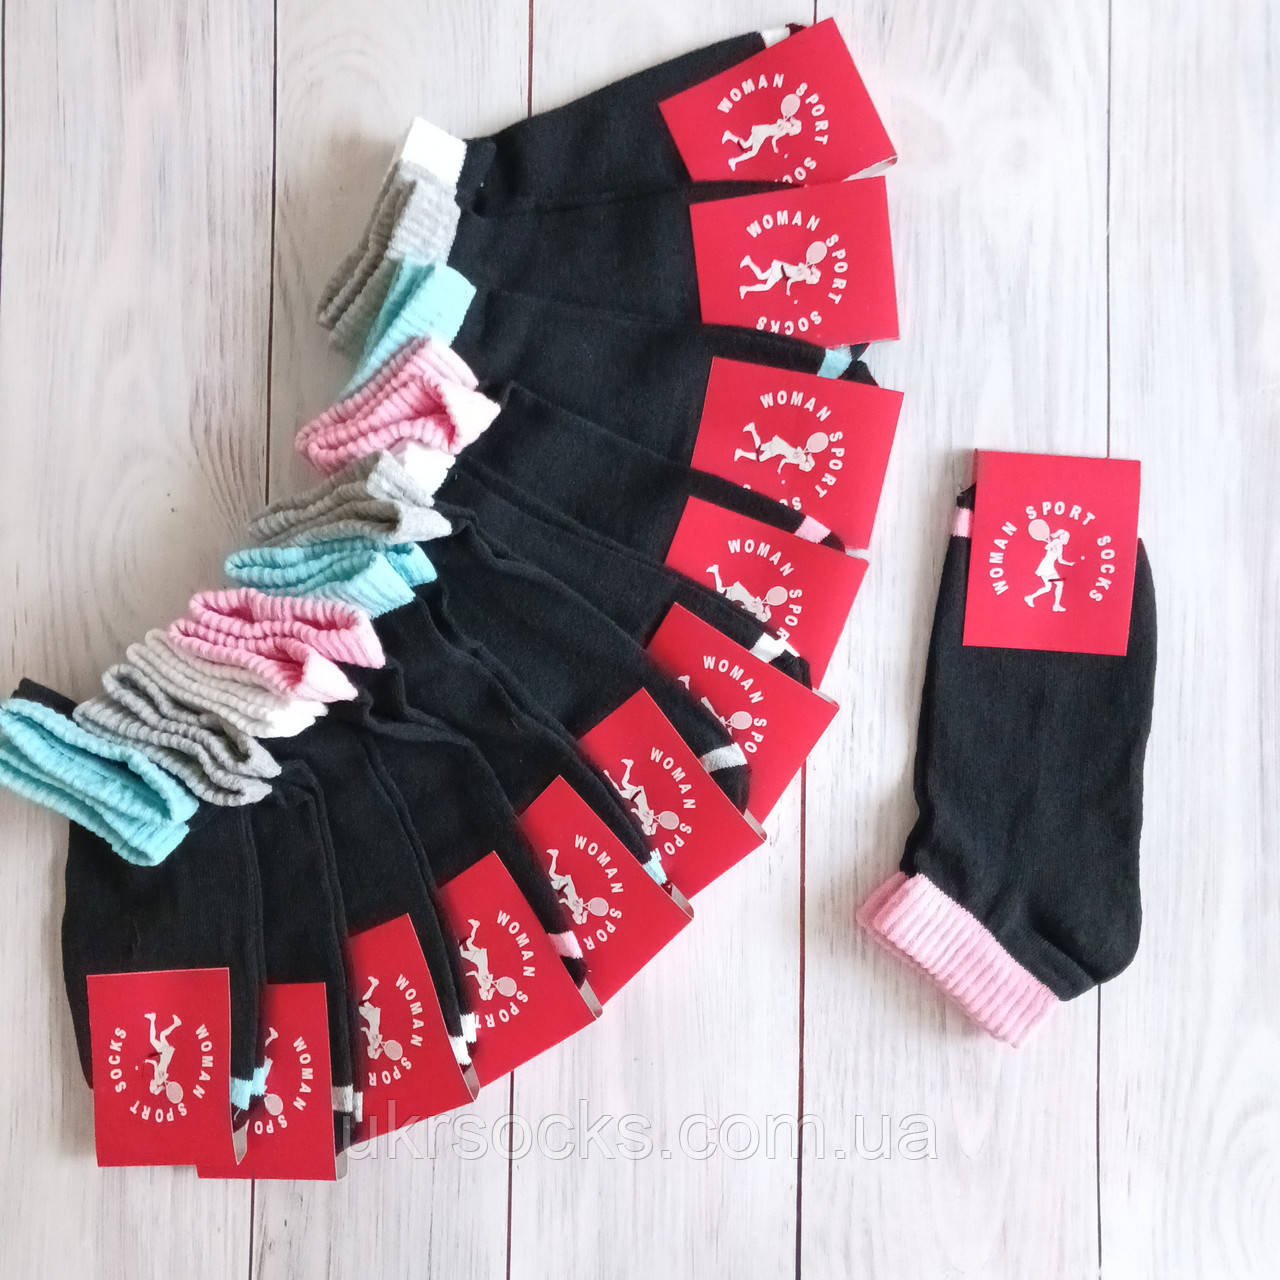 Шкарпетки жіночі SPORT бавовна чорні з кольоровою резинкою 37-39 | 12 пар